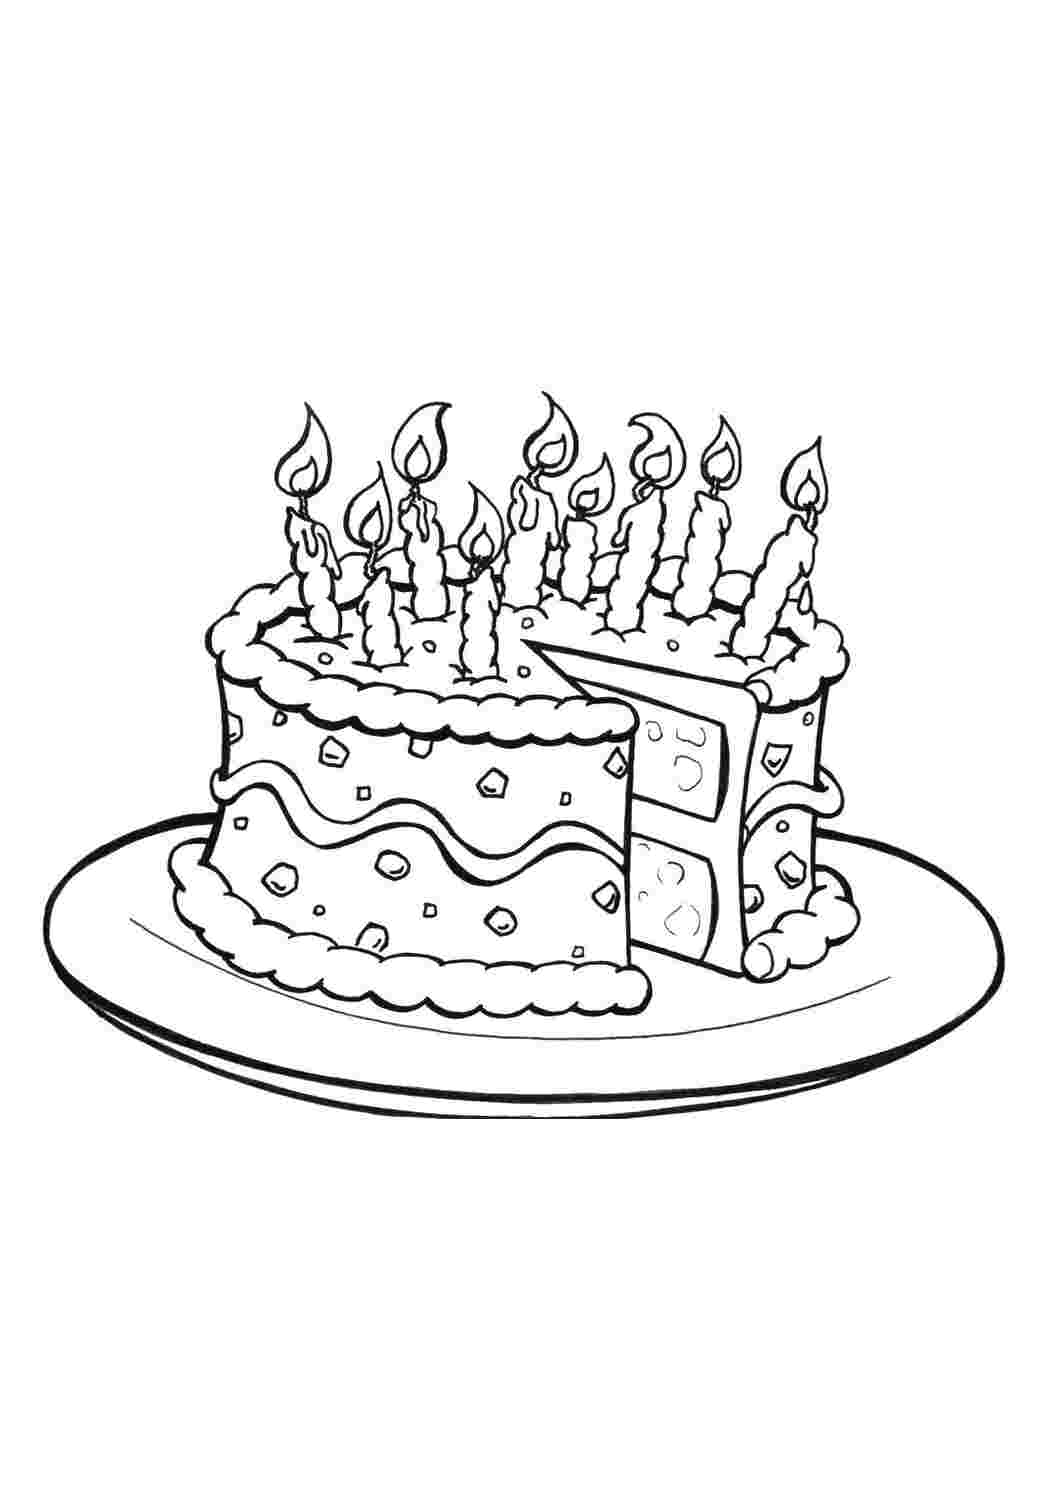 Раскраски Отрезанный торт со свечами торты торт, свечи, тарелка